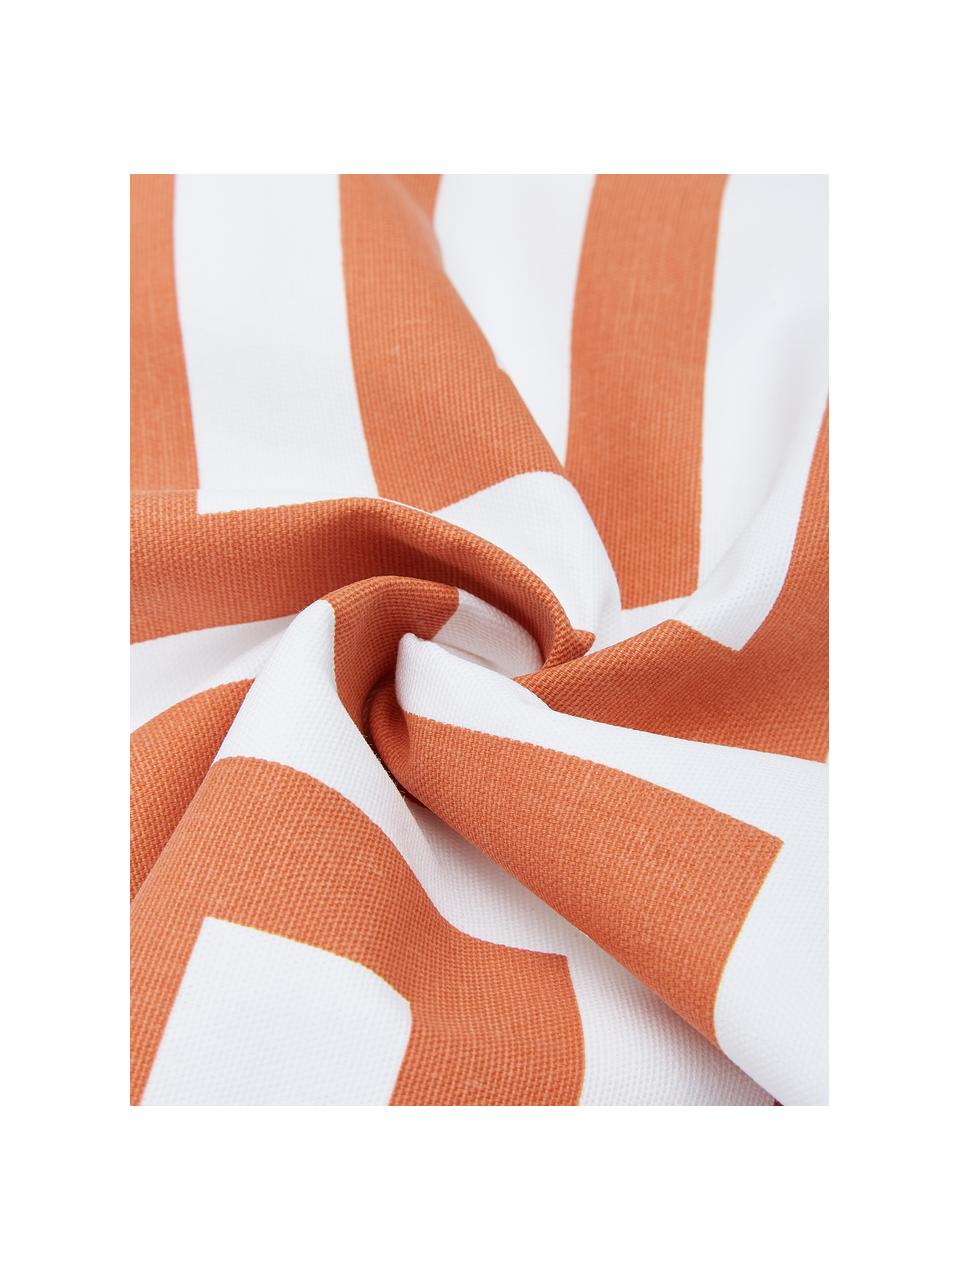 Poszewka na poduszkę Bram, 100% bawełna, Biały, pomarańczowy, S 45 x D 45 cm